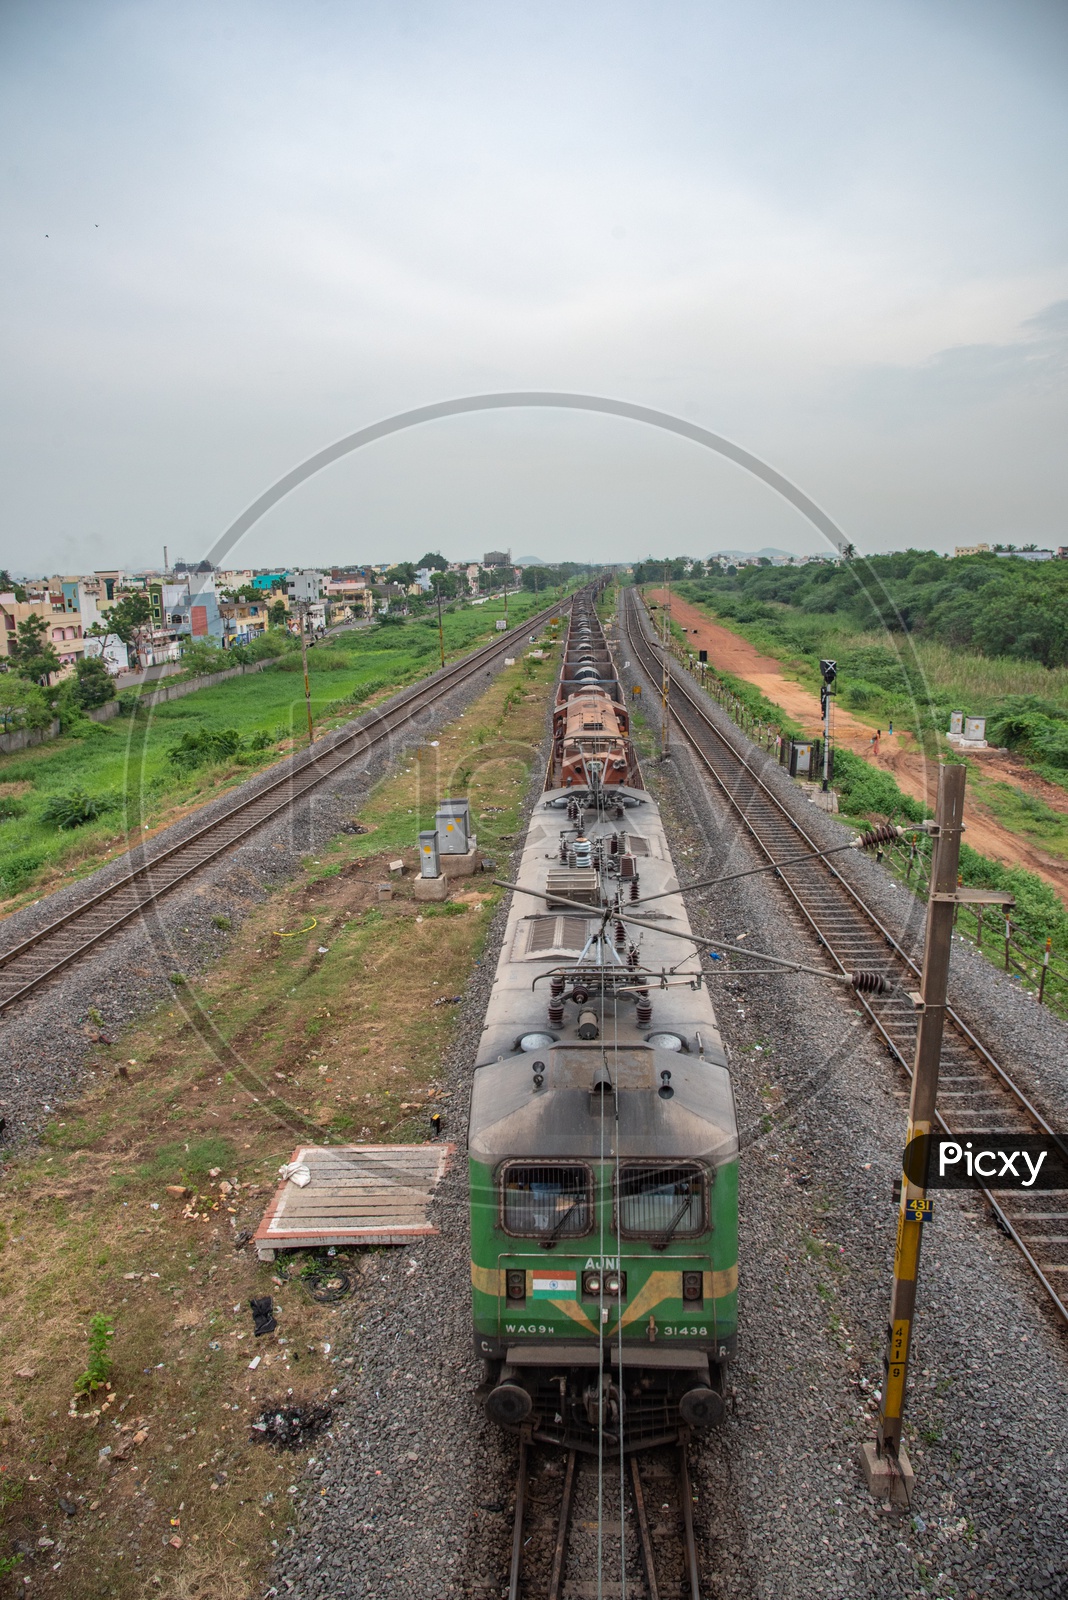 Railway Tracks in Vijayawada